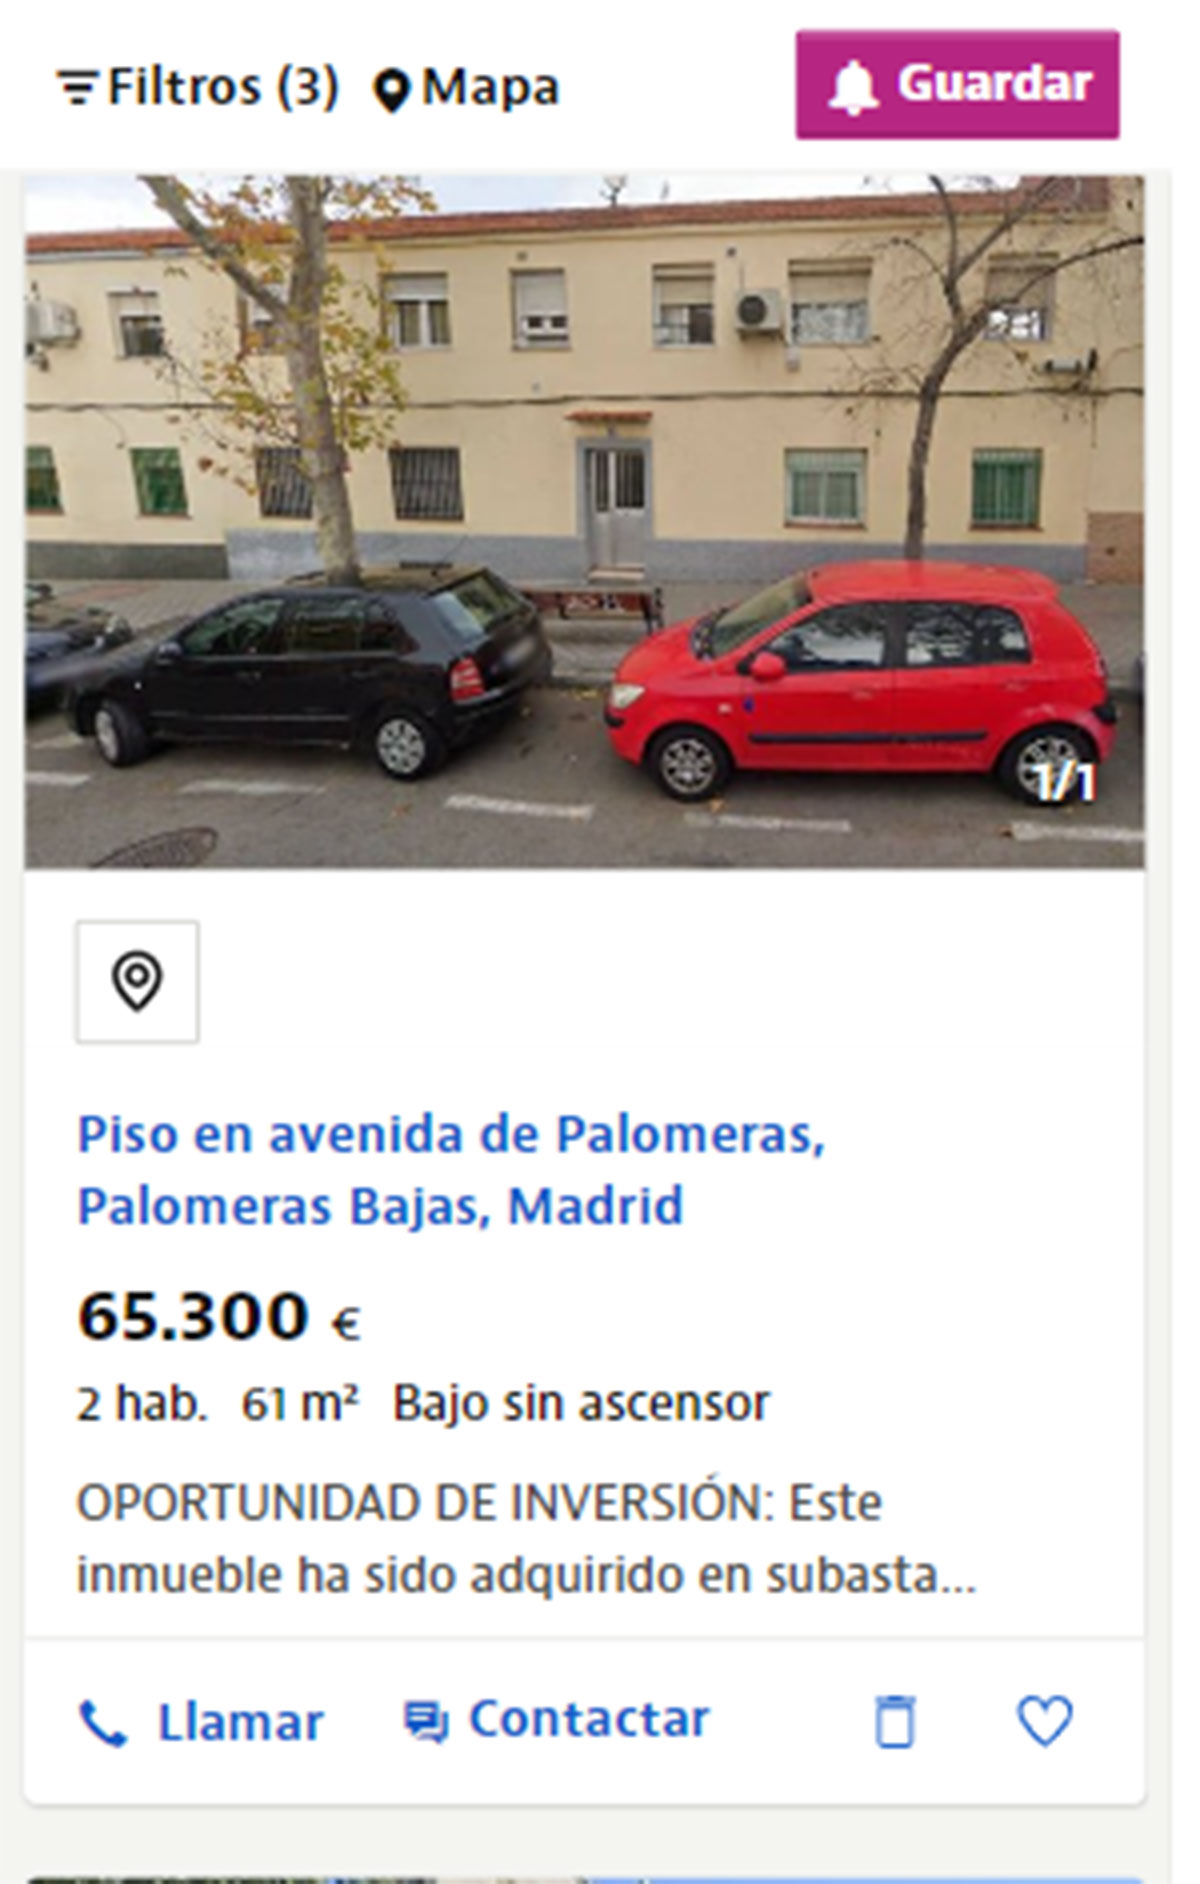 Piso cerca de Madrid por 65.300 euros